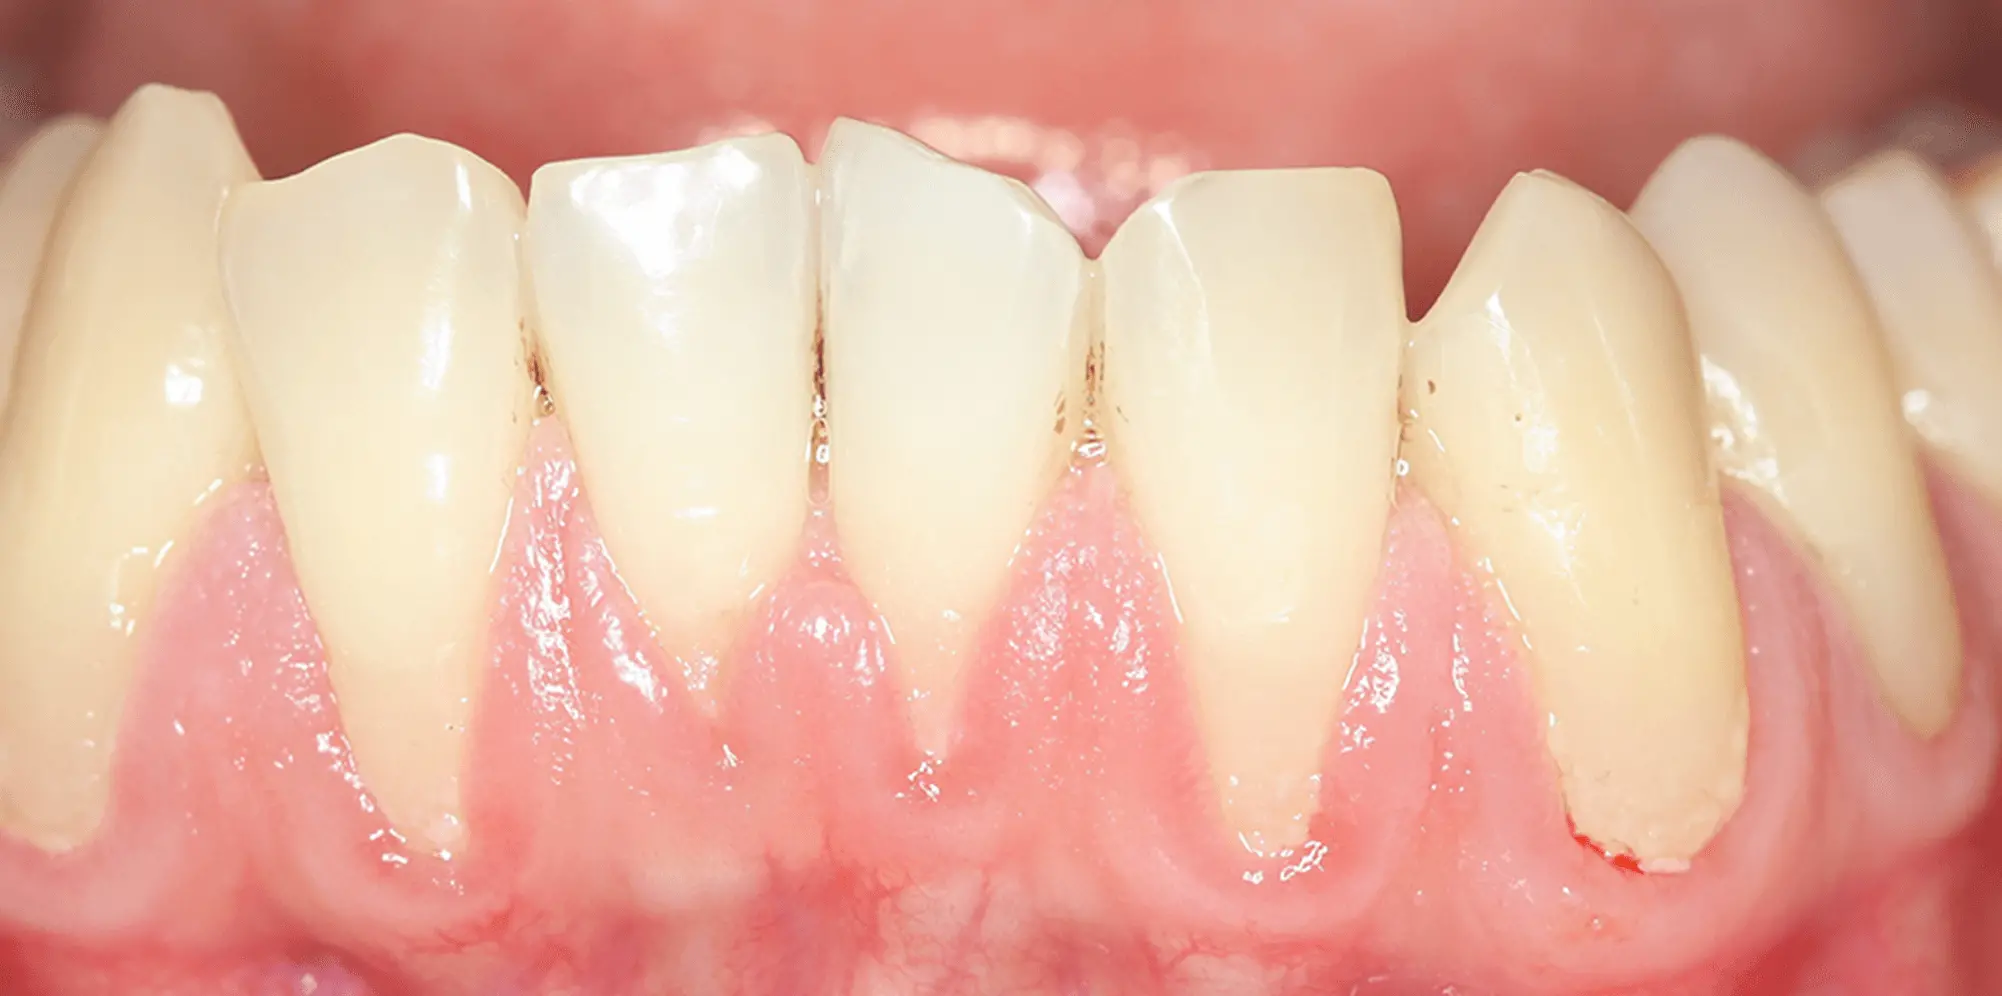 歯周病を患っている歯茎の画像